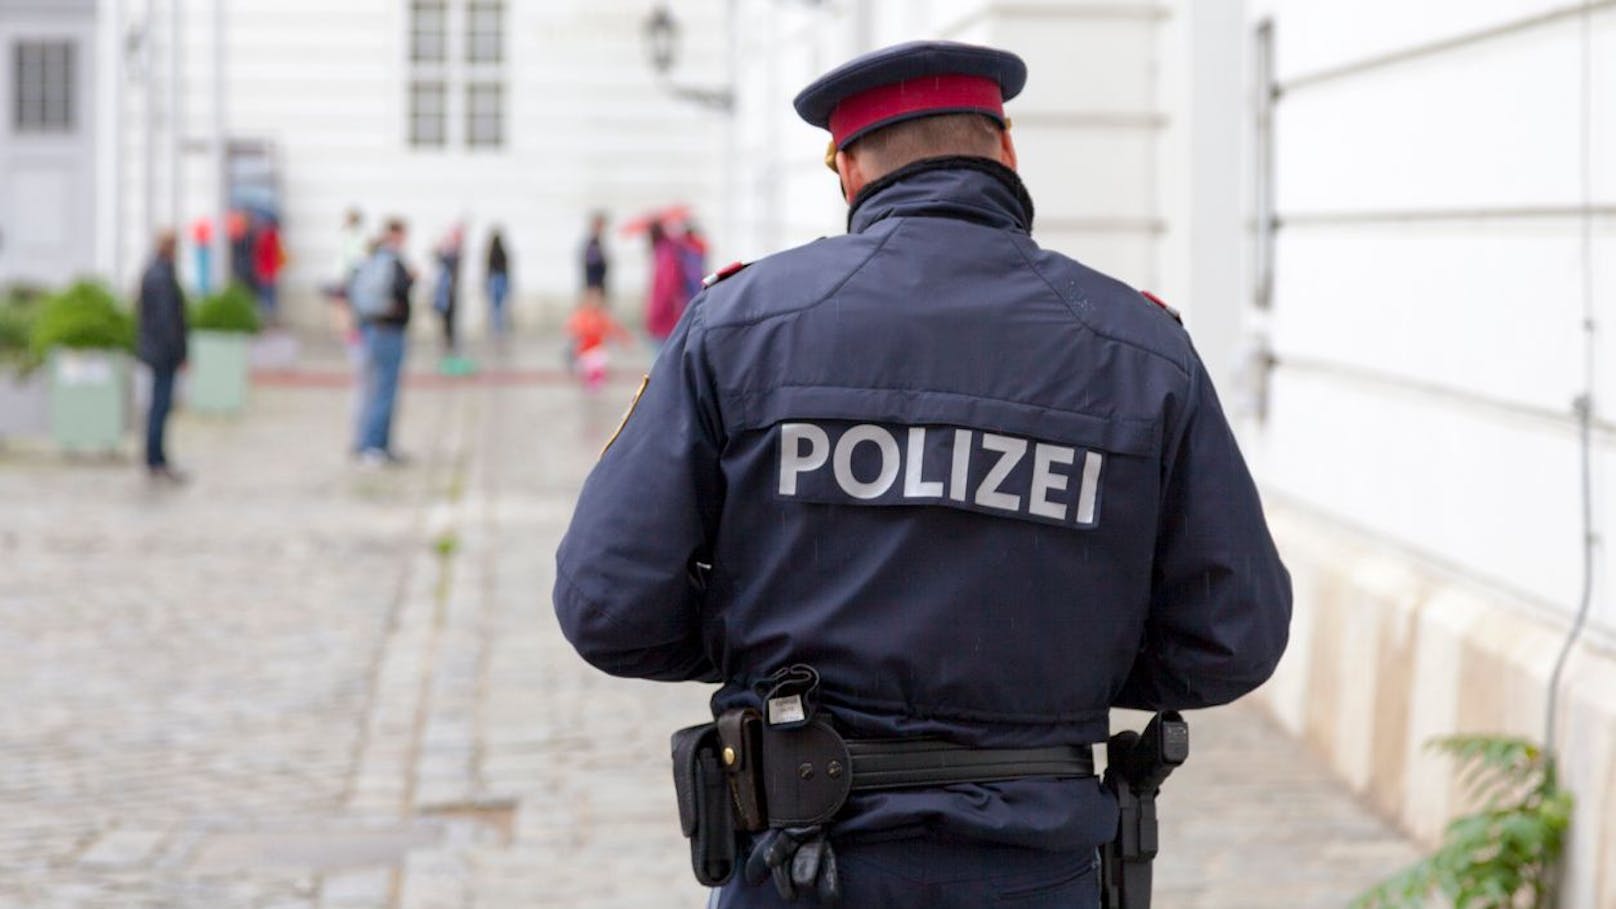 Polizei gibt "dringende Warnung" an alle Bürger aus